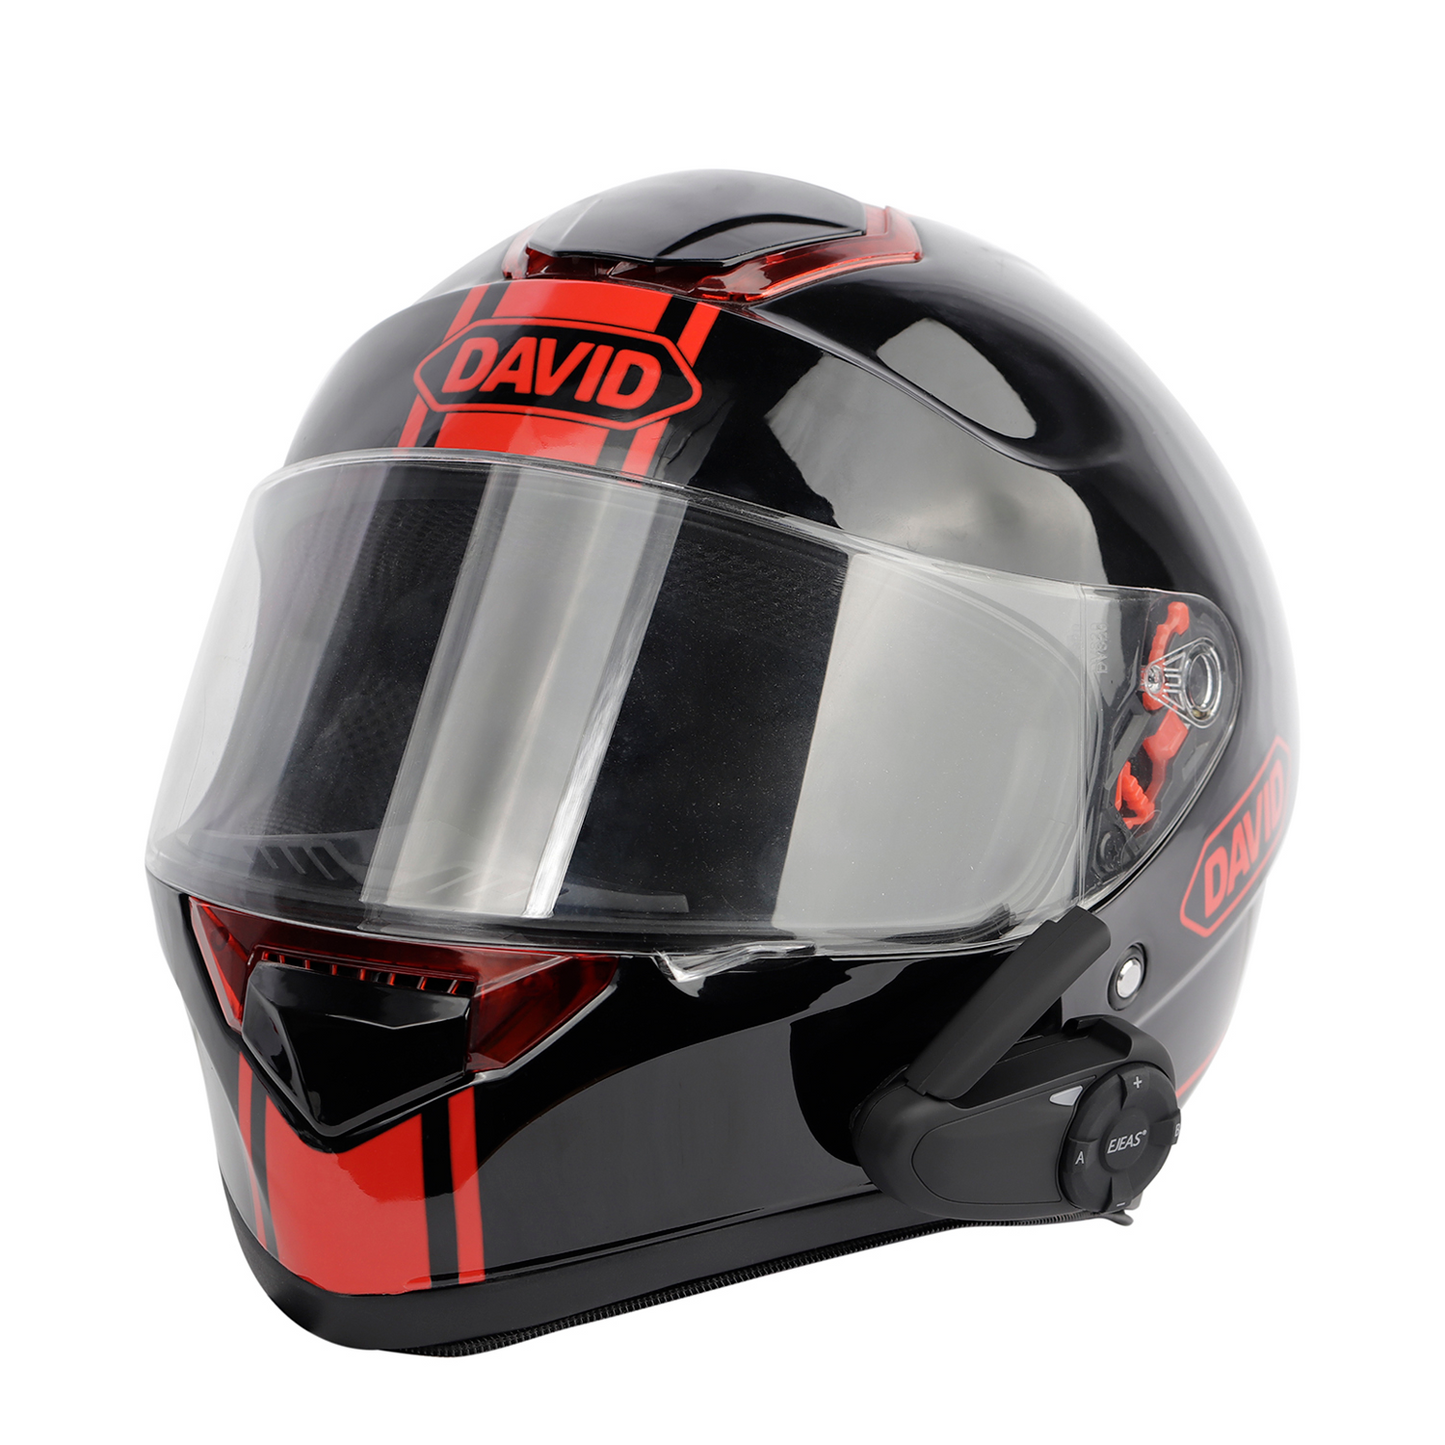 EJEAS Motorcycle Helmet Intercom Headset Clips for Q7/Q4/Q2